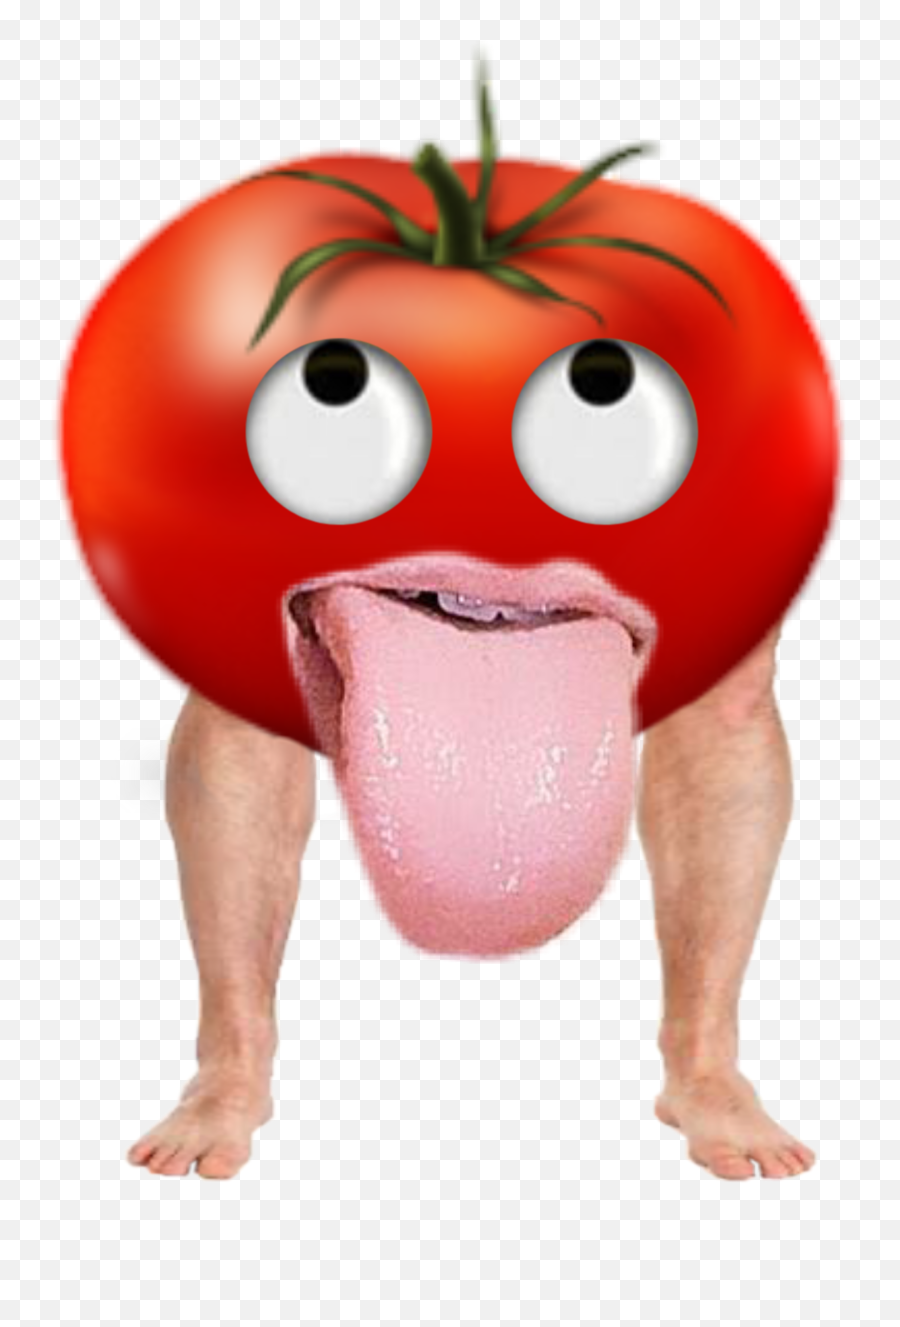 Tomato Food Sticker Emoji,Find The Emoji Tomato